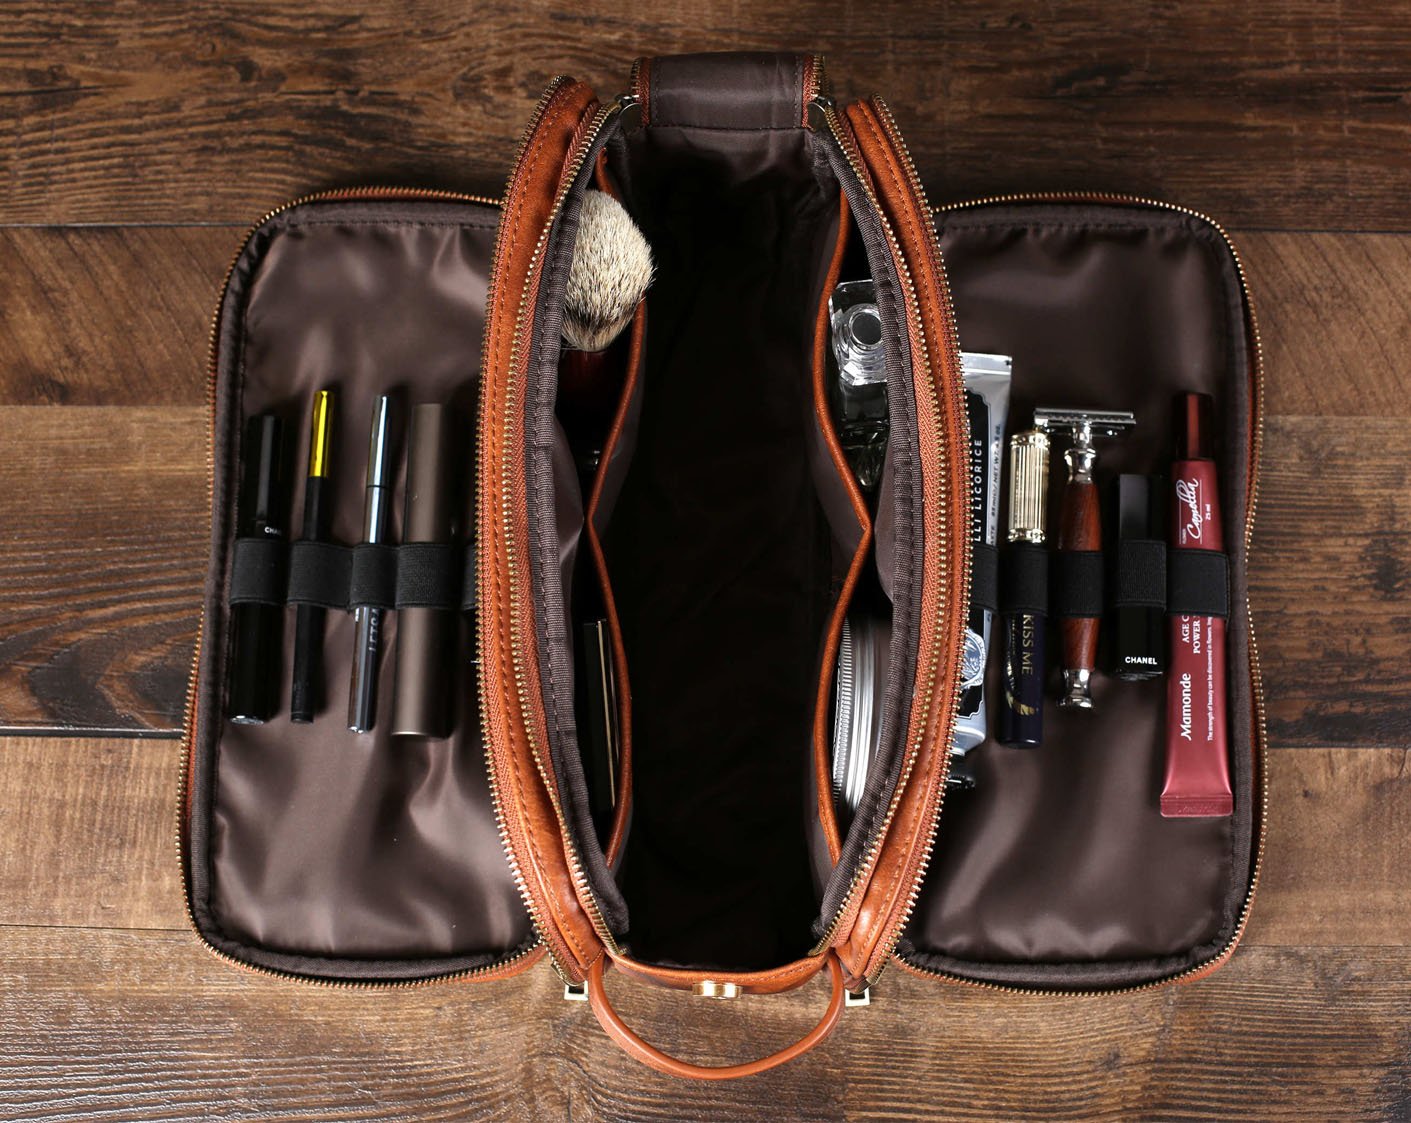 Groomsmen Gift Toiletry Bag for Men, Travel Shaving Dopp Kit Bag